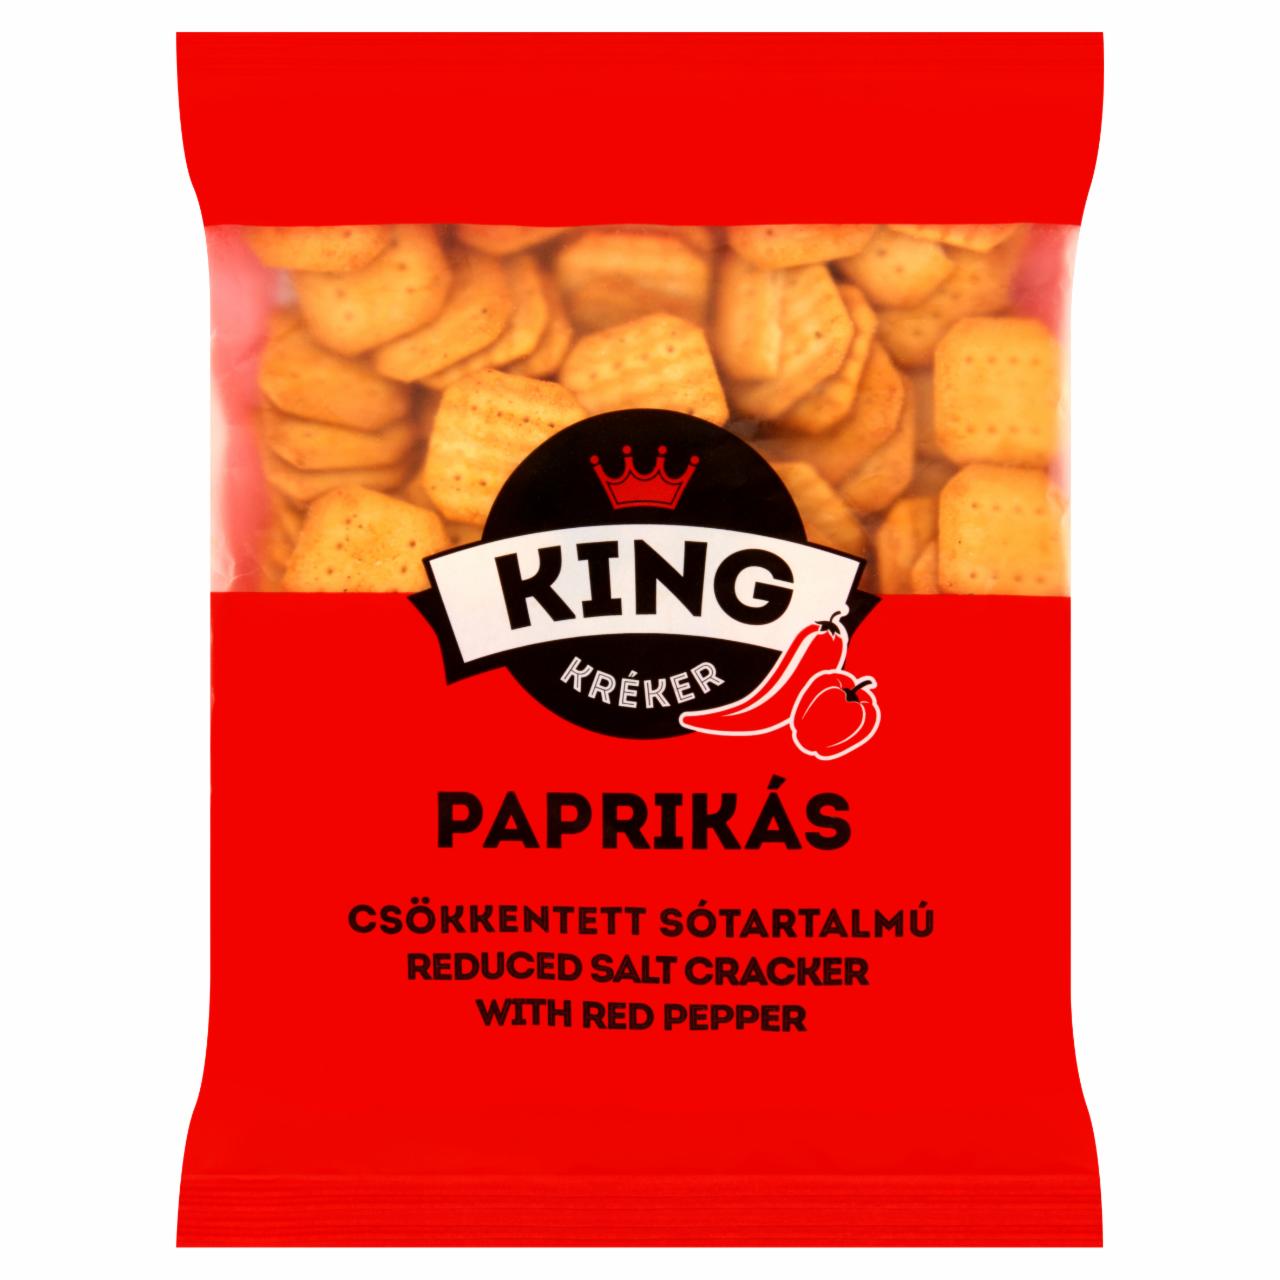 Képek - King csökkentett sótartalmú paprikás kréker 100 g